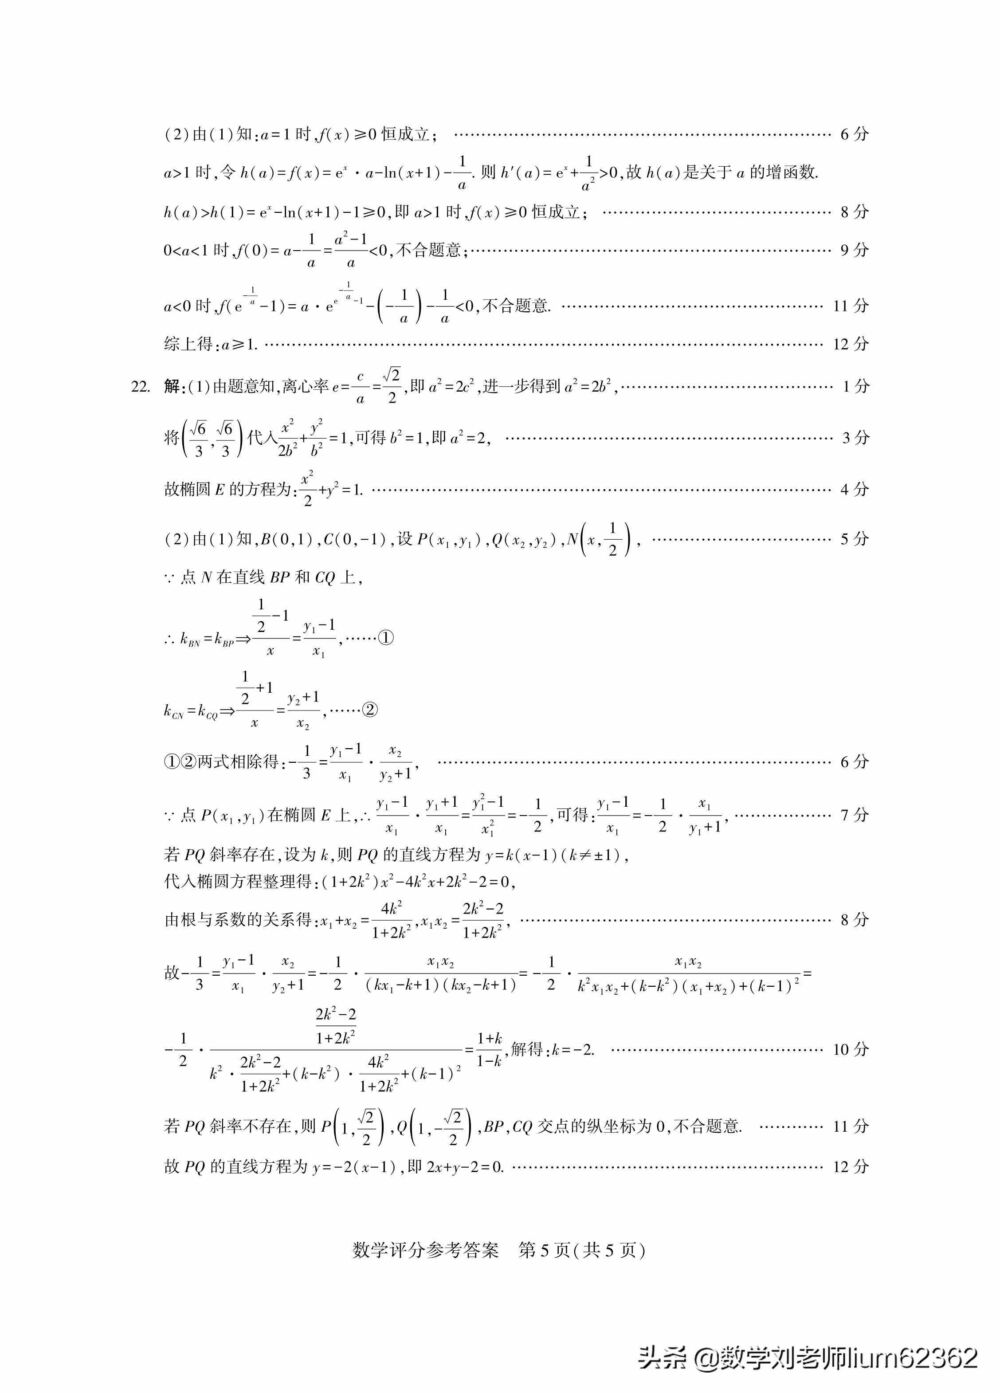 河北省2021年5月高考模拟超级联考数学